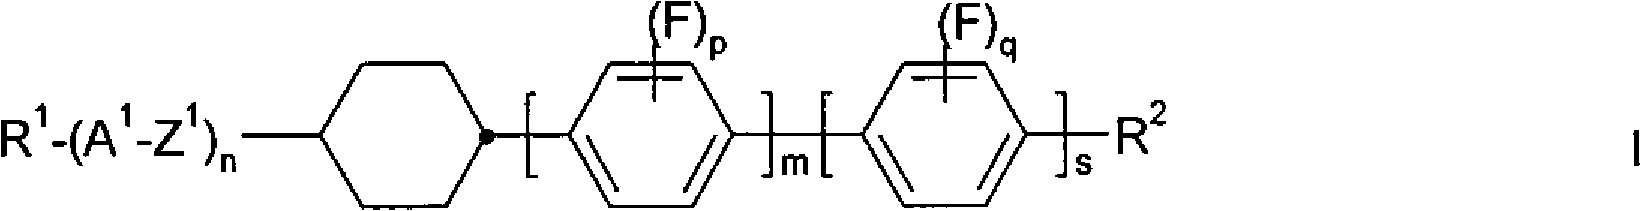 Isomerization method